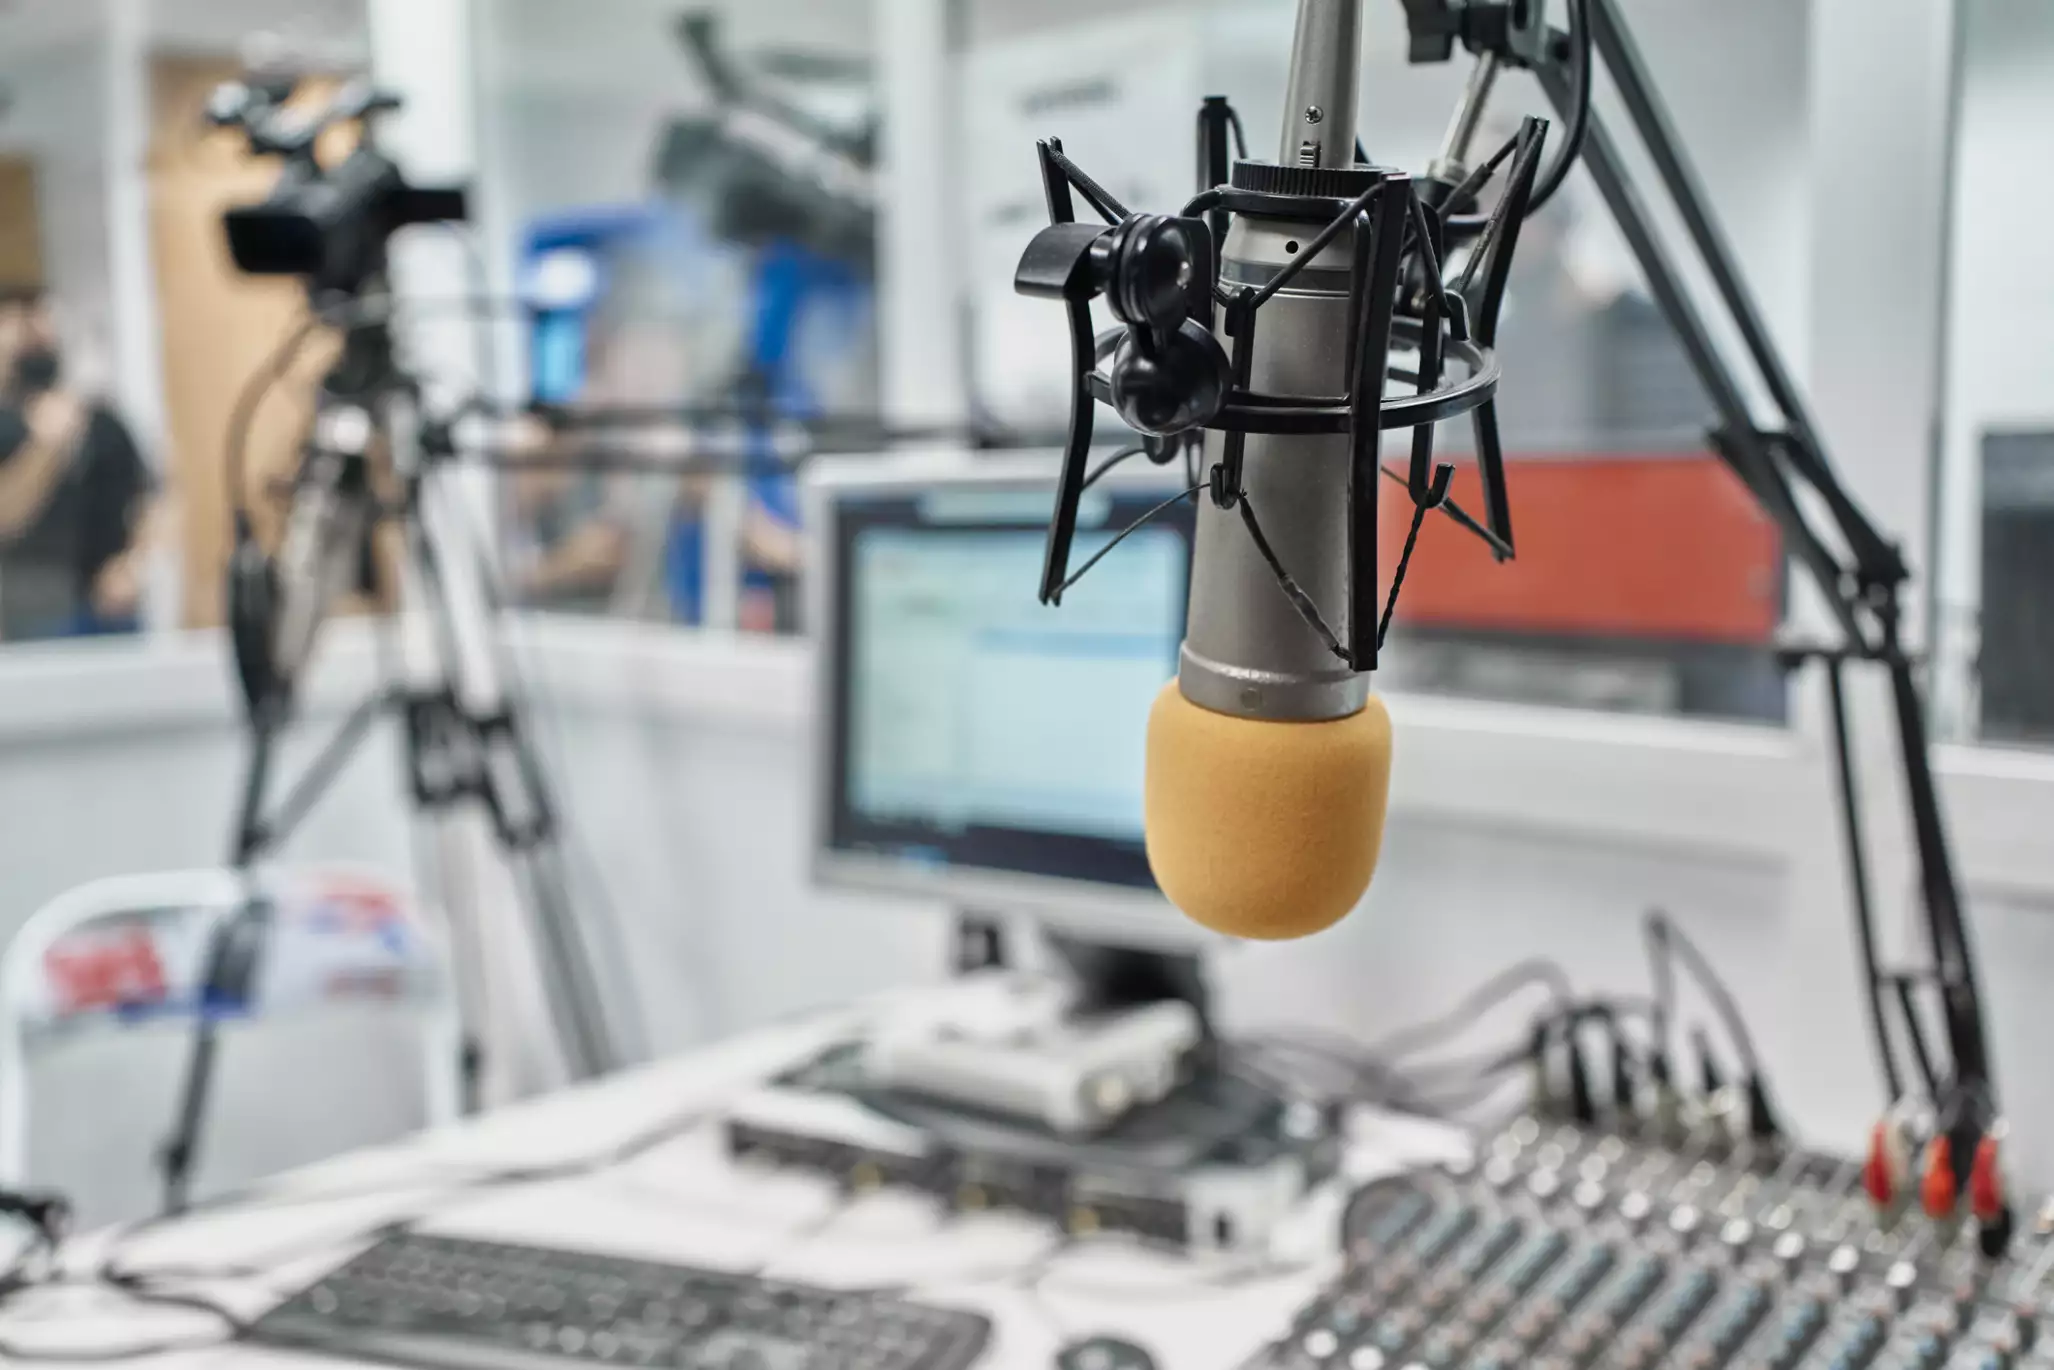 Ринок радіо за 2021 рік: бюджети зросли на 39%